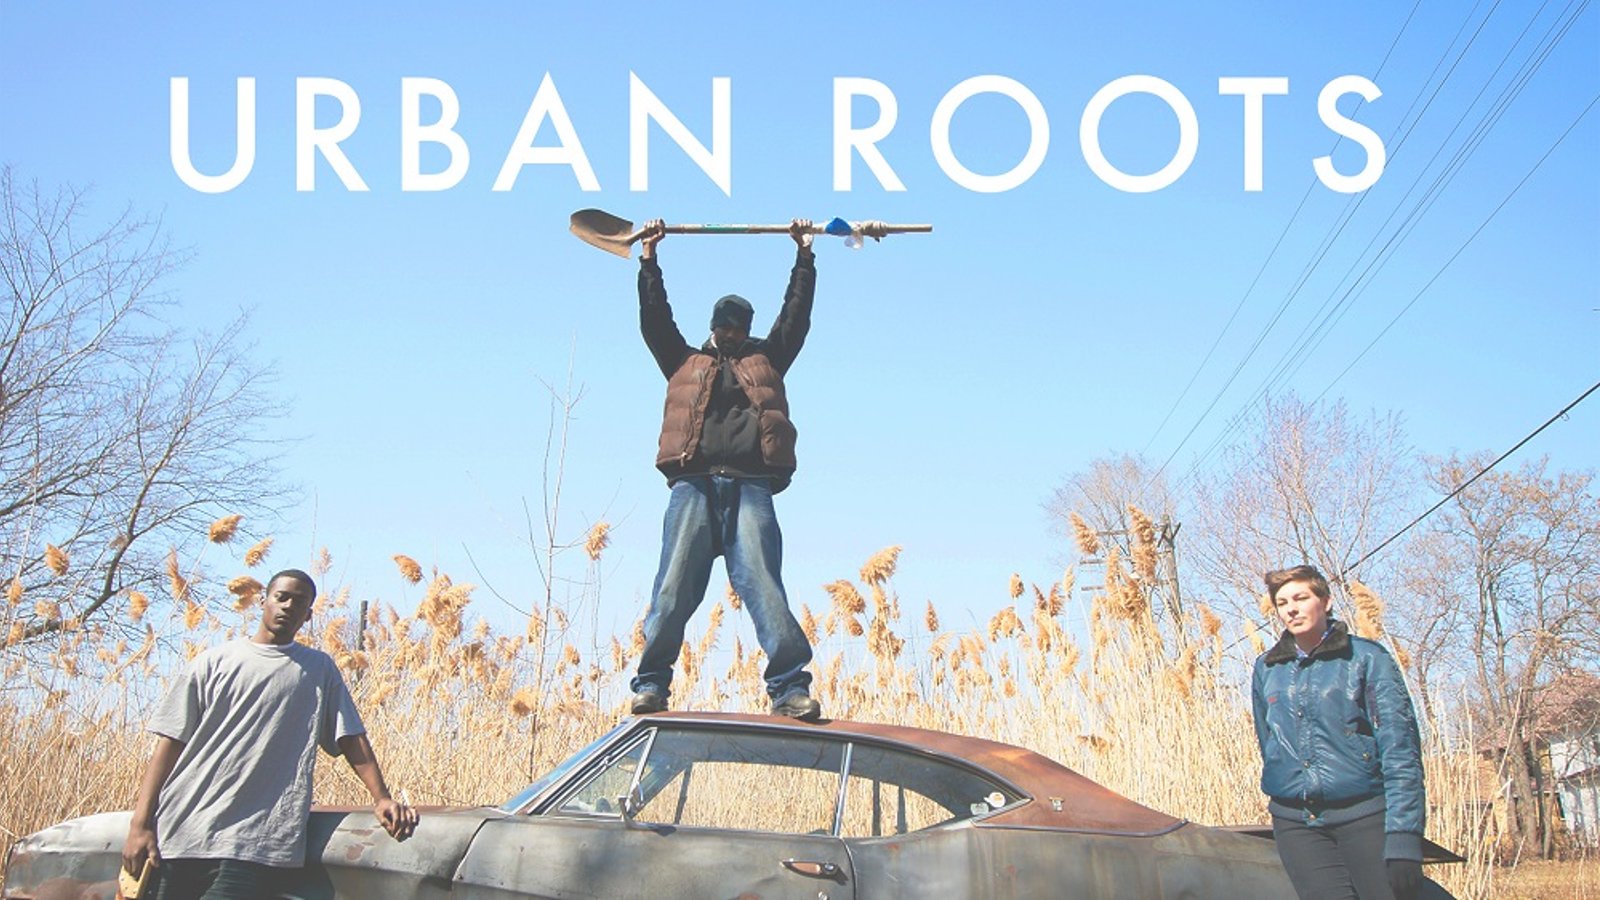 Urban Roots - Urban Gardens in Detroit